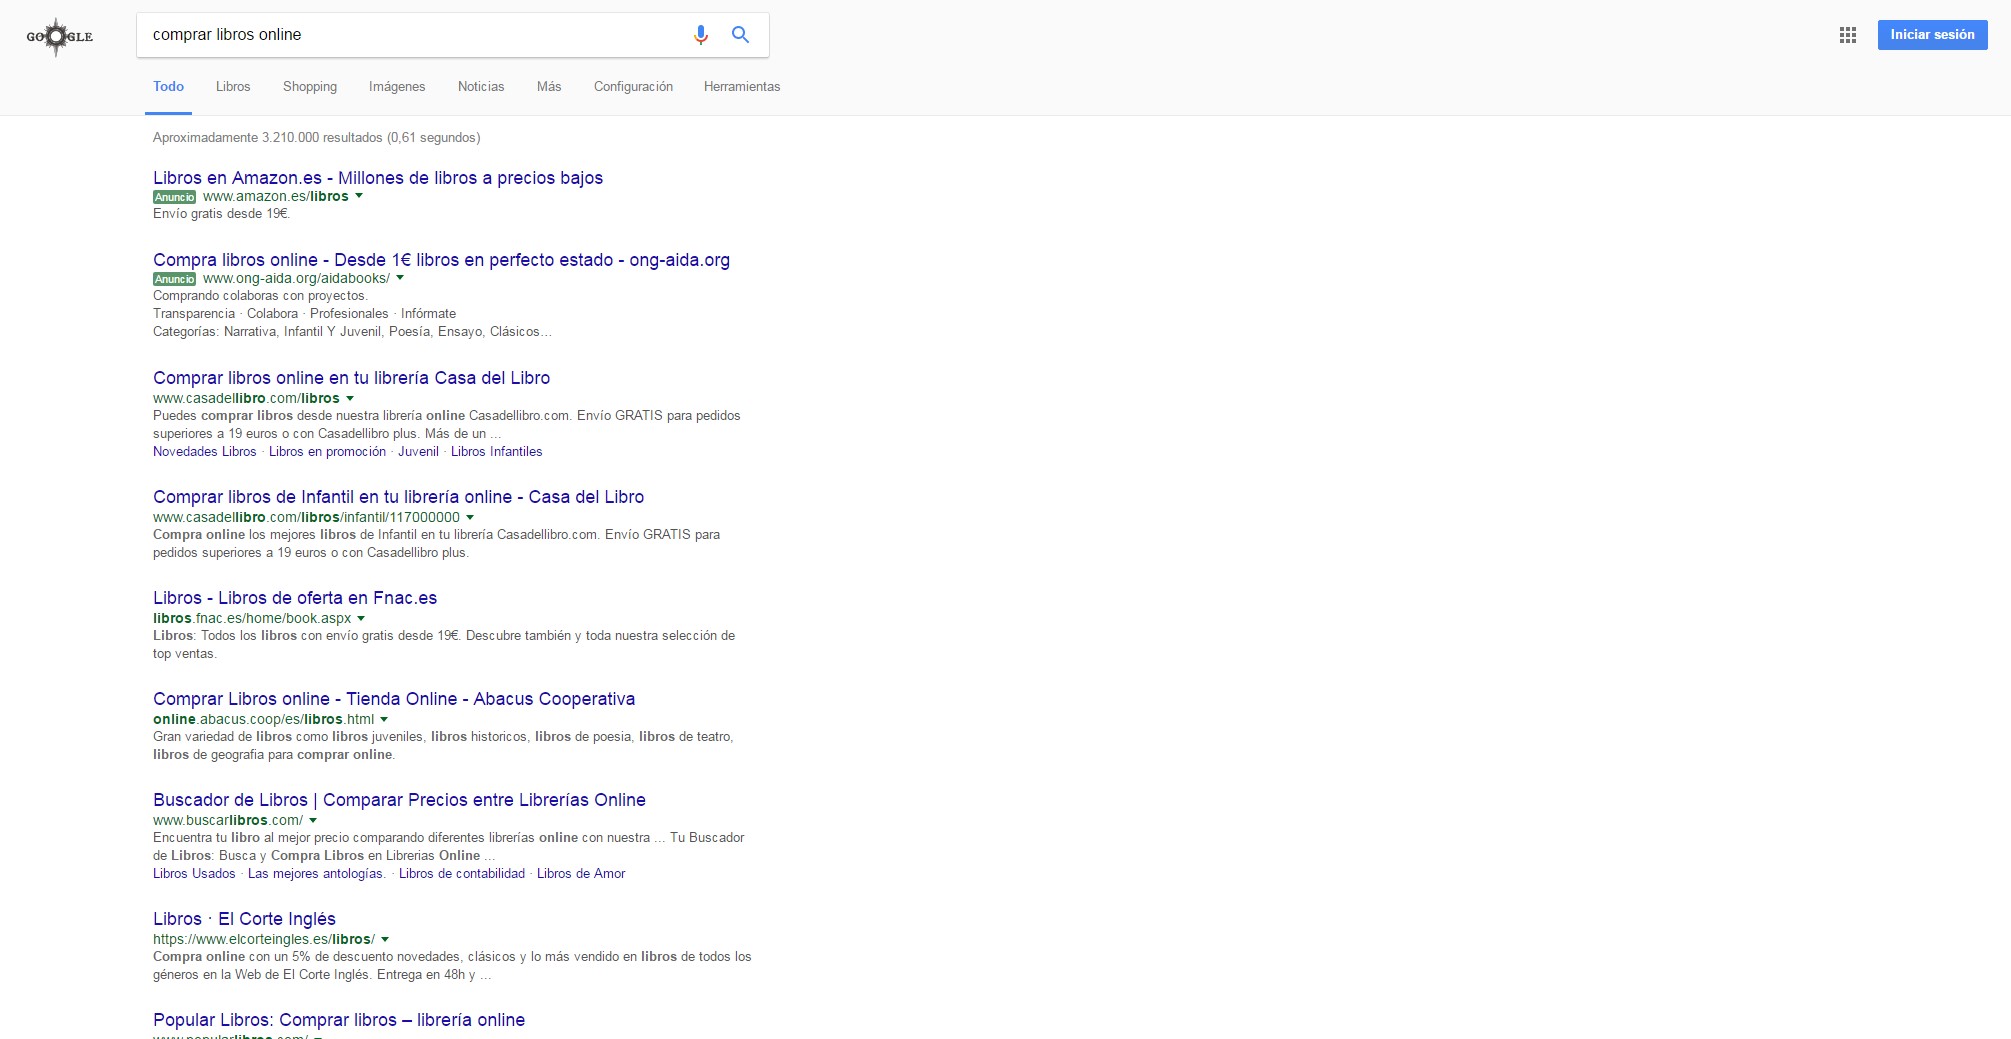 Resultados de búsqueda en Google para “Comprar libros online”